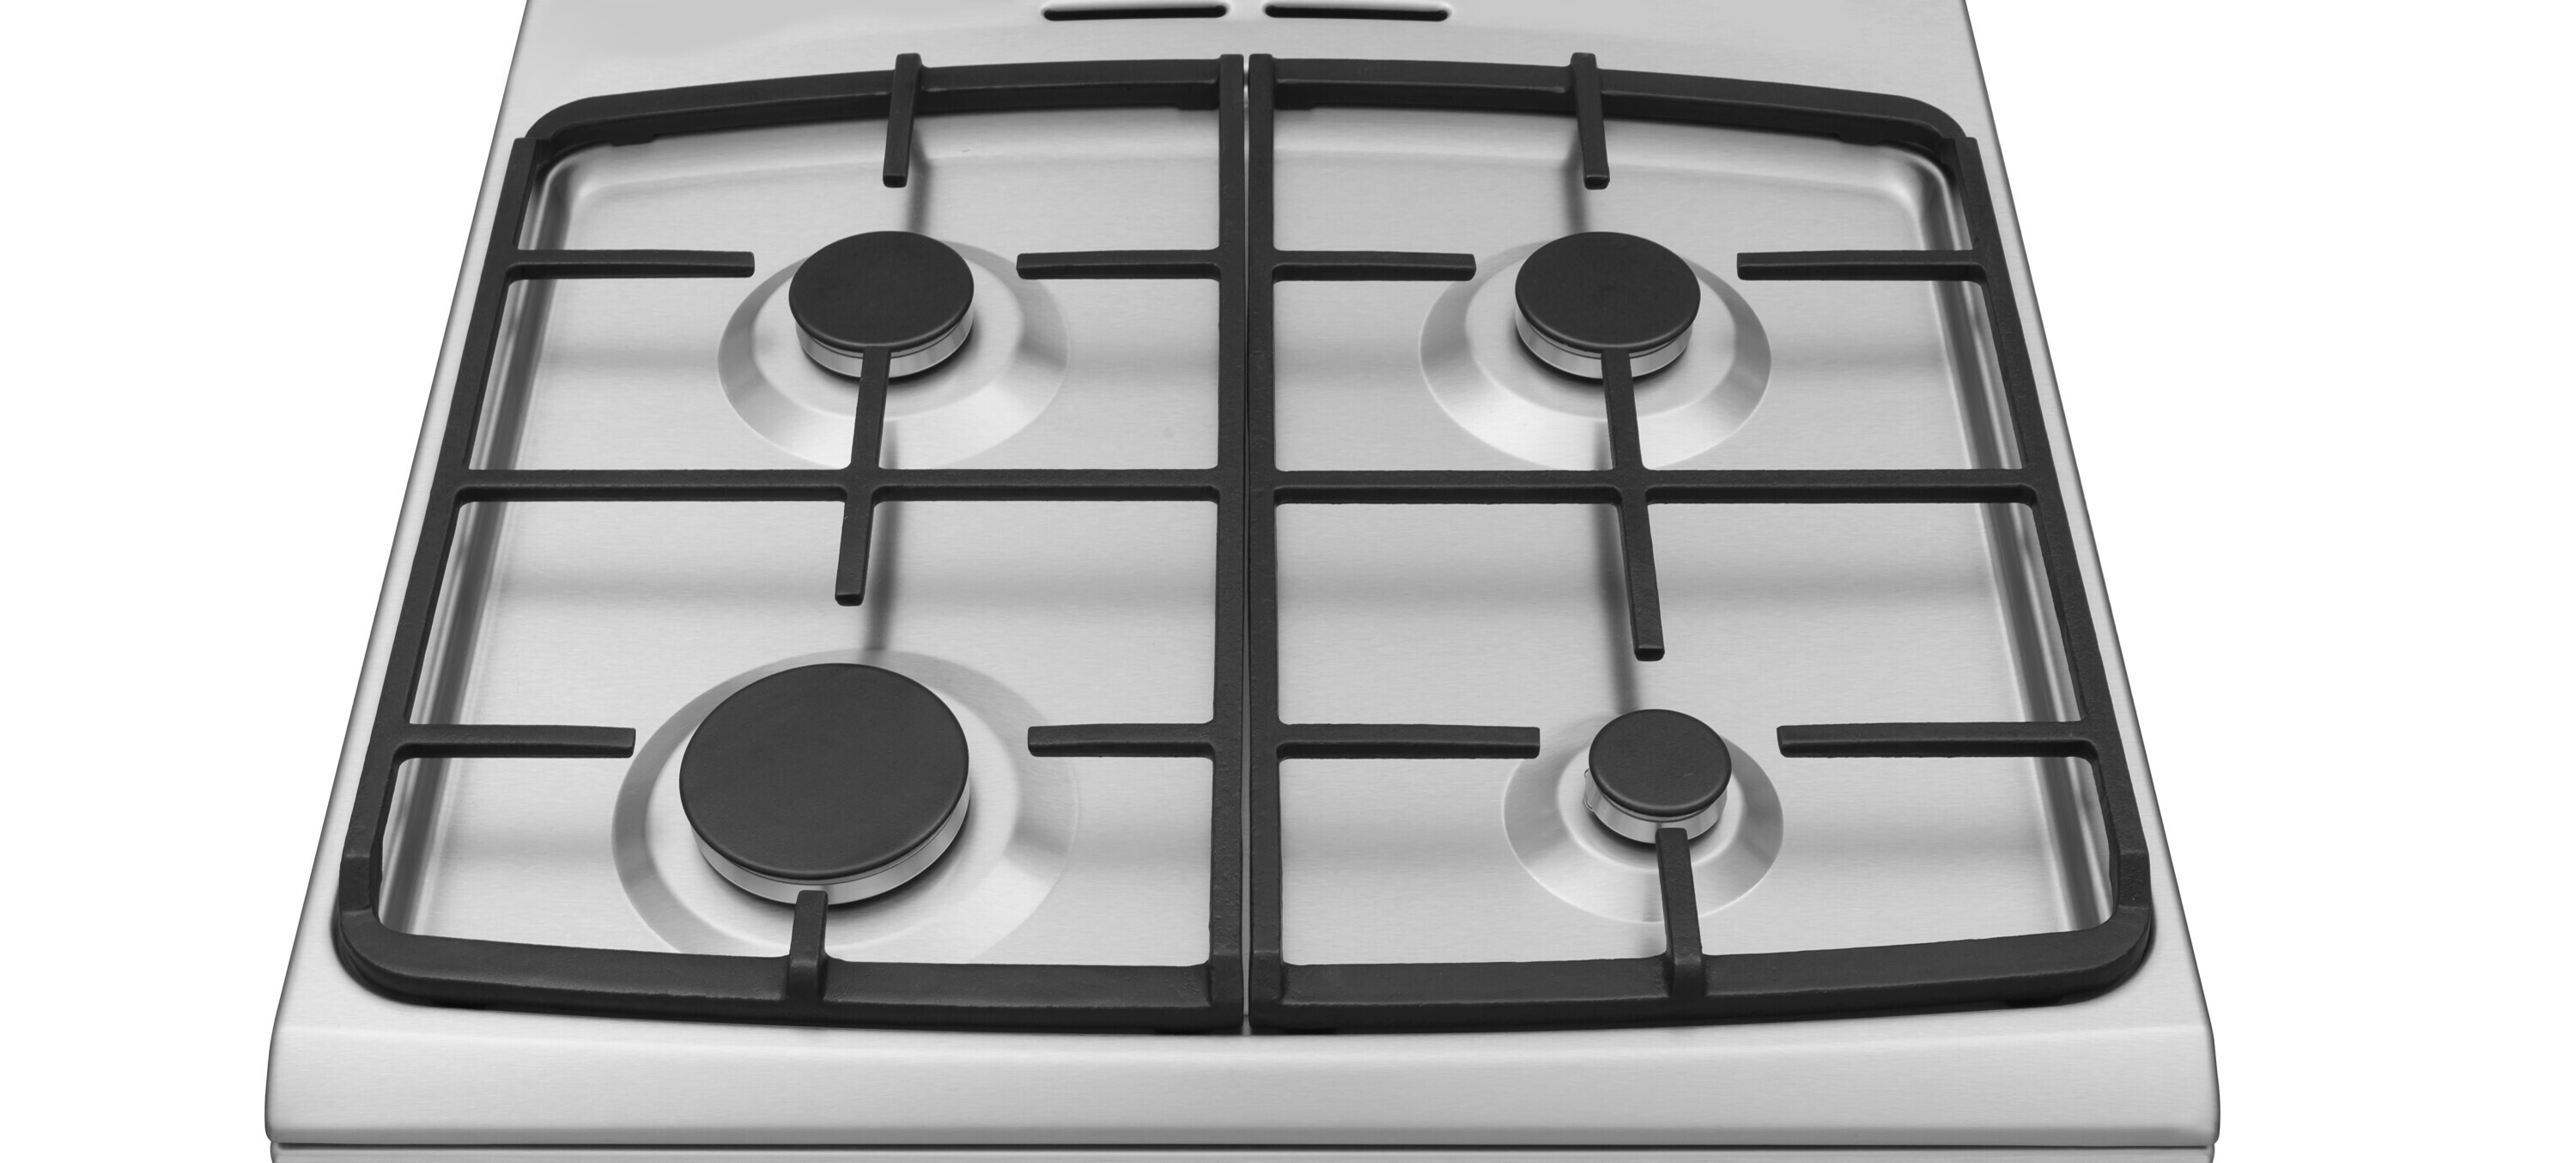 Кухонная плита Hansa FCMX69235 отзывы - изображения 5